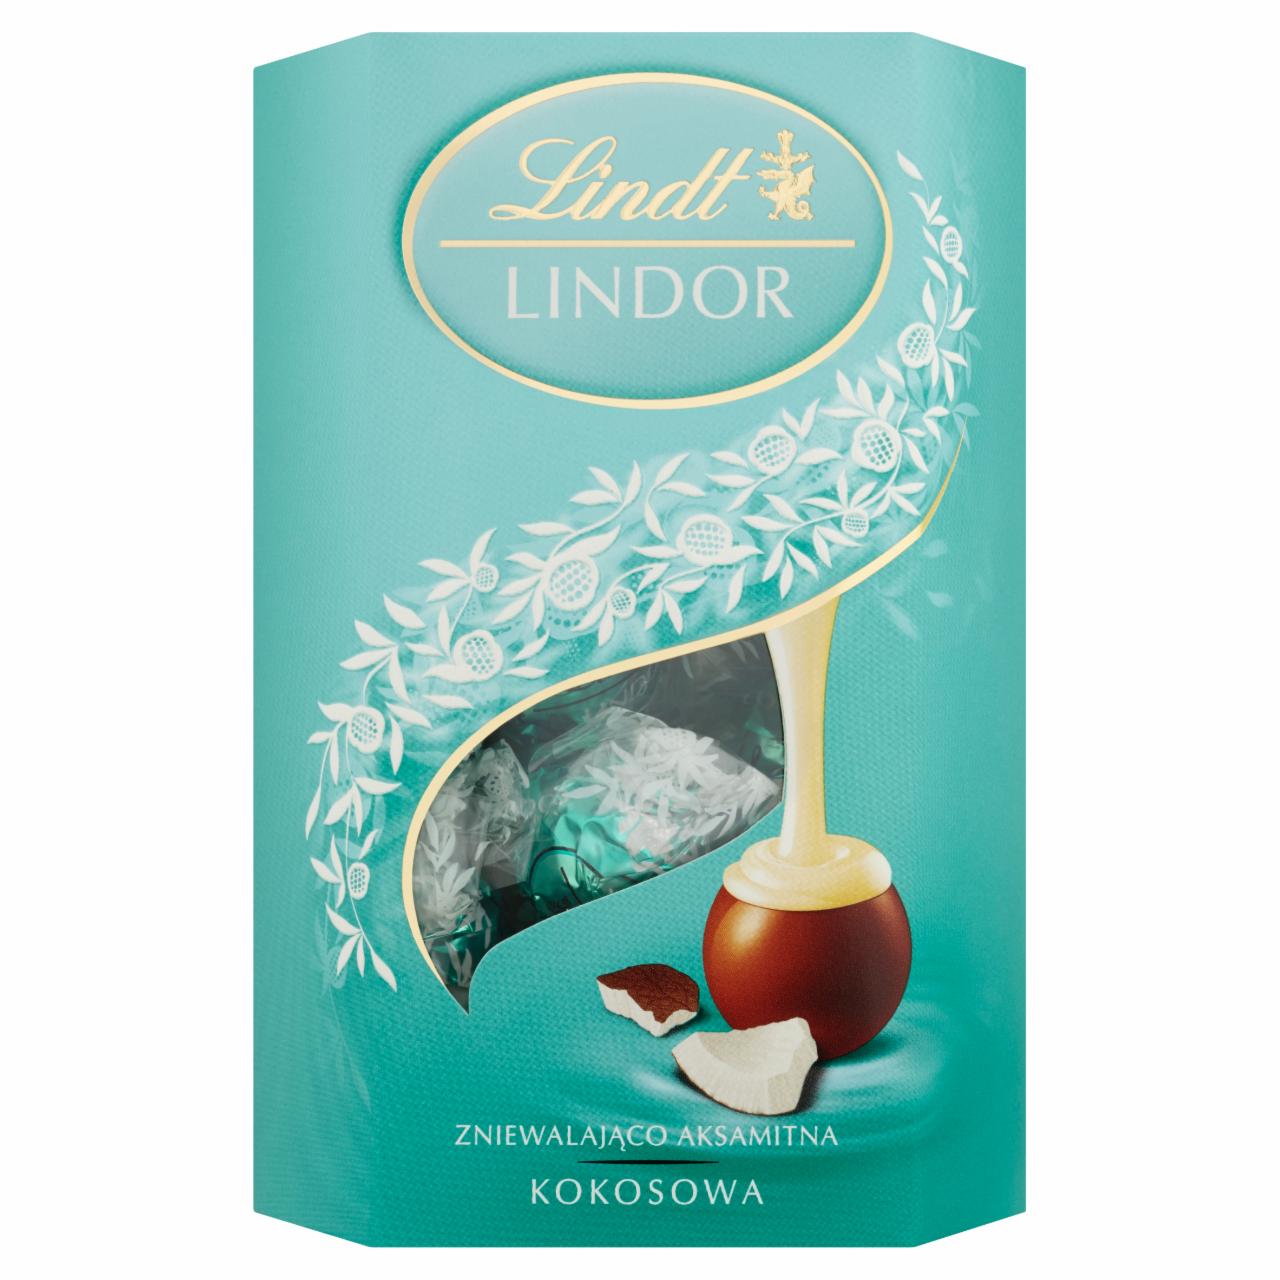 Zdjęcia - Lindt Lindor Kokosowa Pralinki z czekolady mlecznej z nadzieniem 175 g